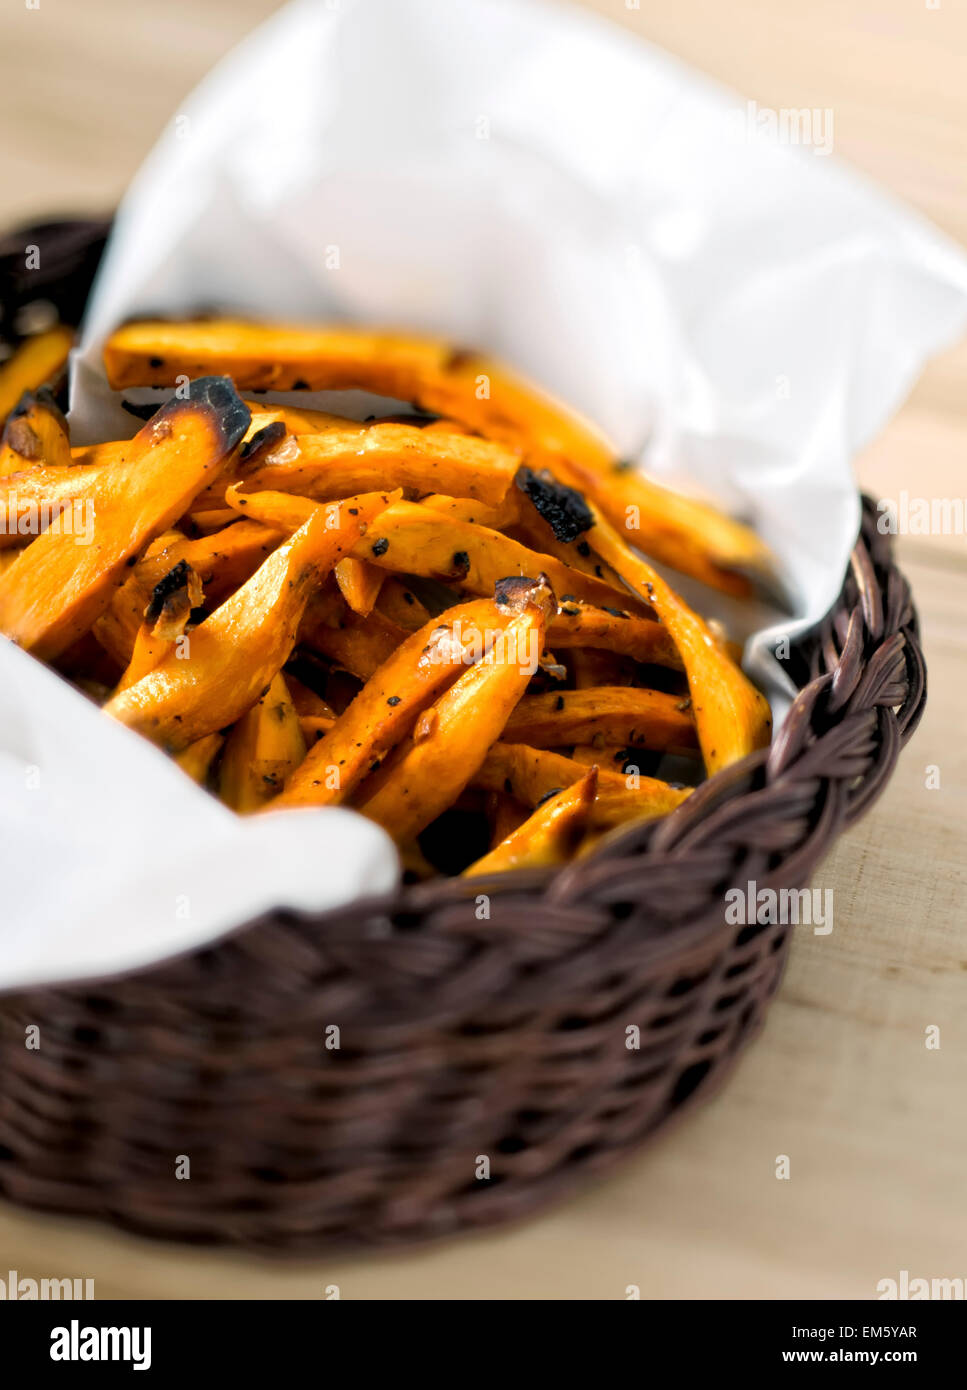 sweet potato fries Stock Photo